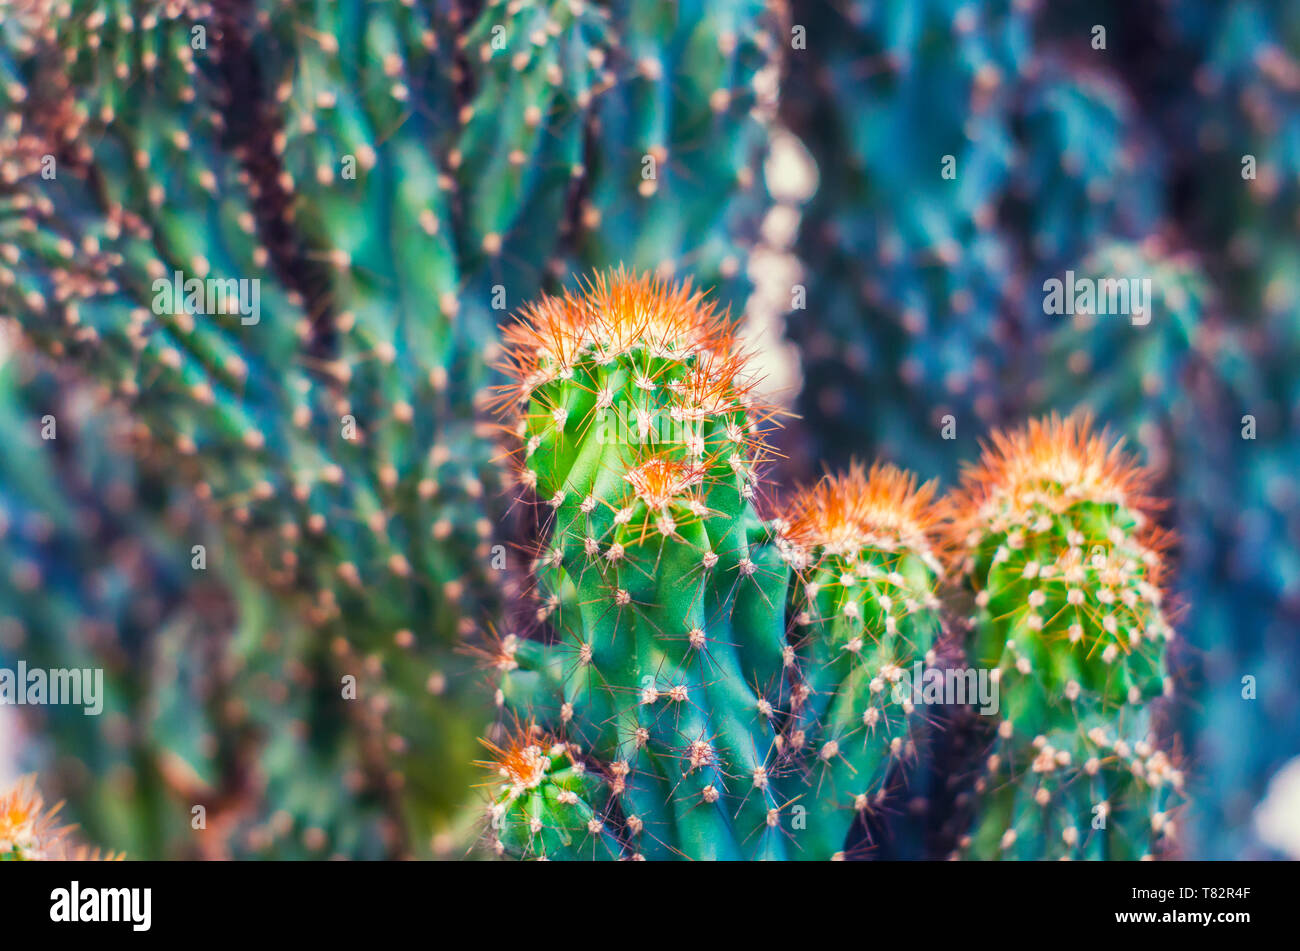 Cactus Cereus péruvien. Photo fleurs succulentes. Plante épineuse exotique curatifs. Banque D'Images